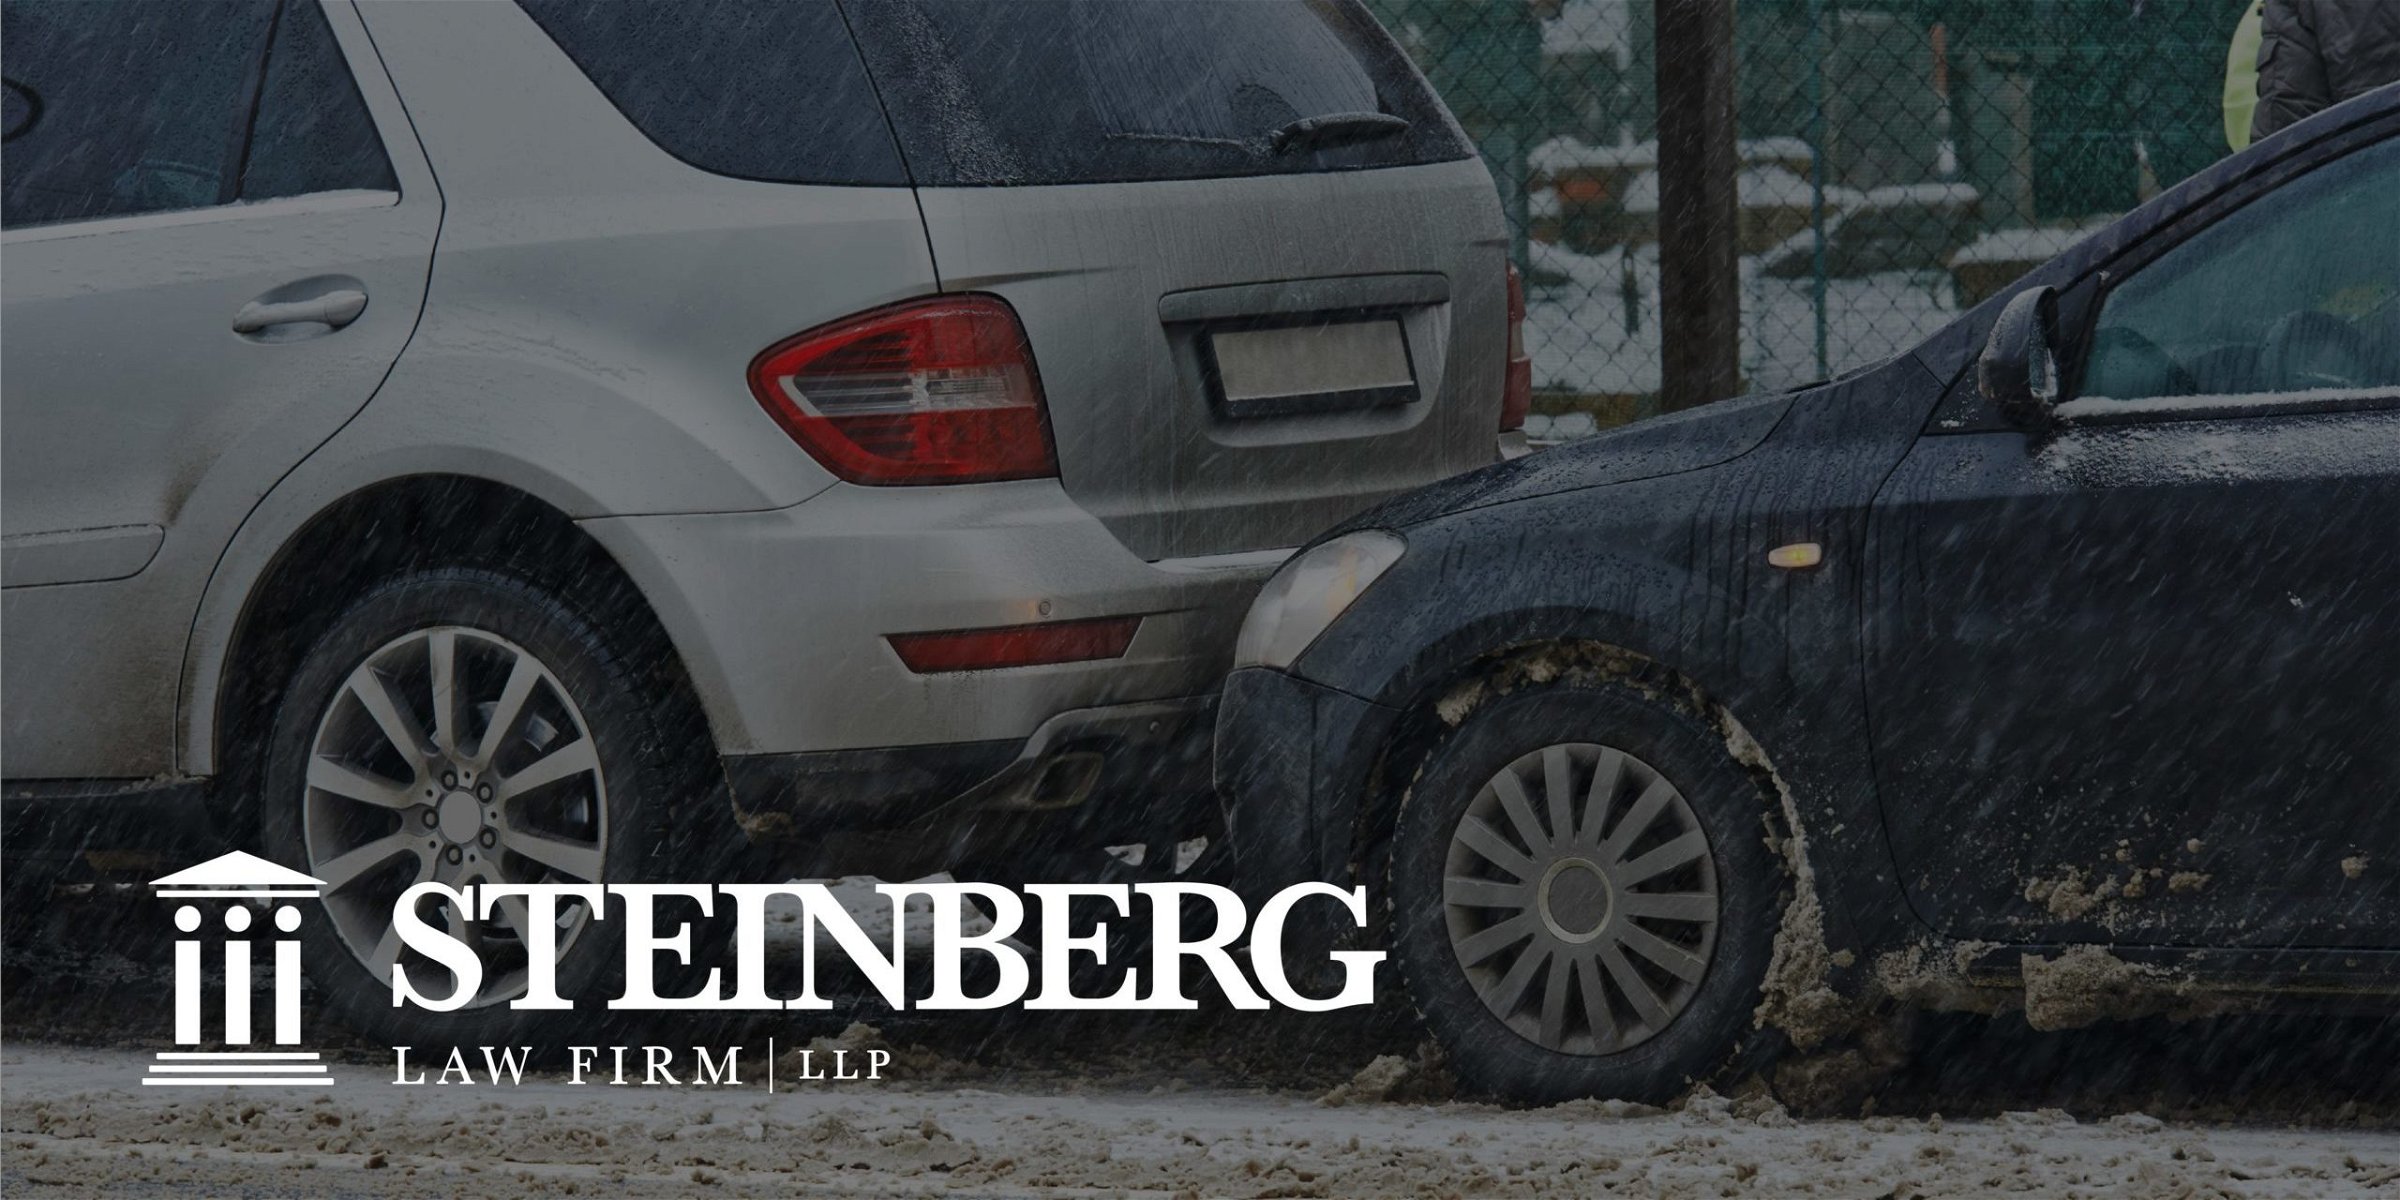 Una nevada histórica en el Charleston provoca accidentes de tráfico; conoce tus derechos desde el Steinberg Law Firm